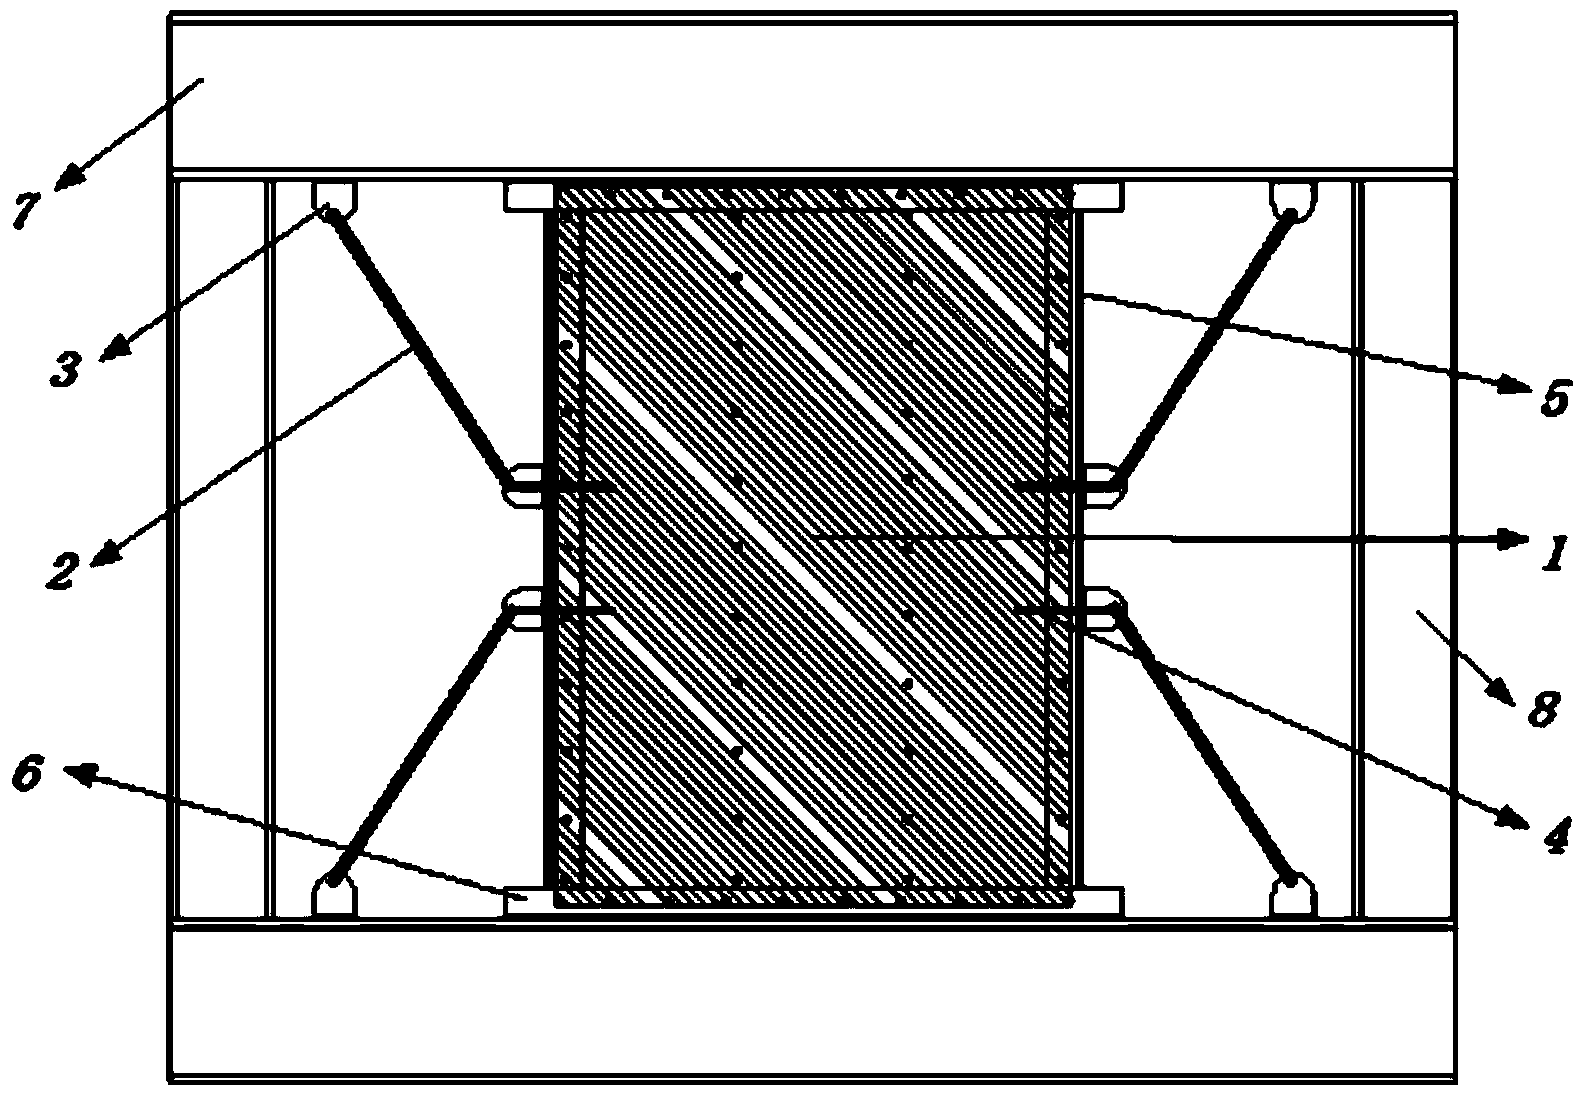 Prestress oblique double-layer folded steel plate shear wall